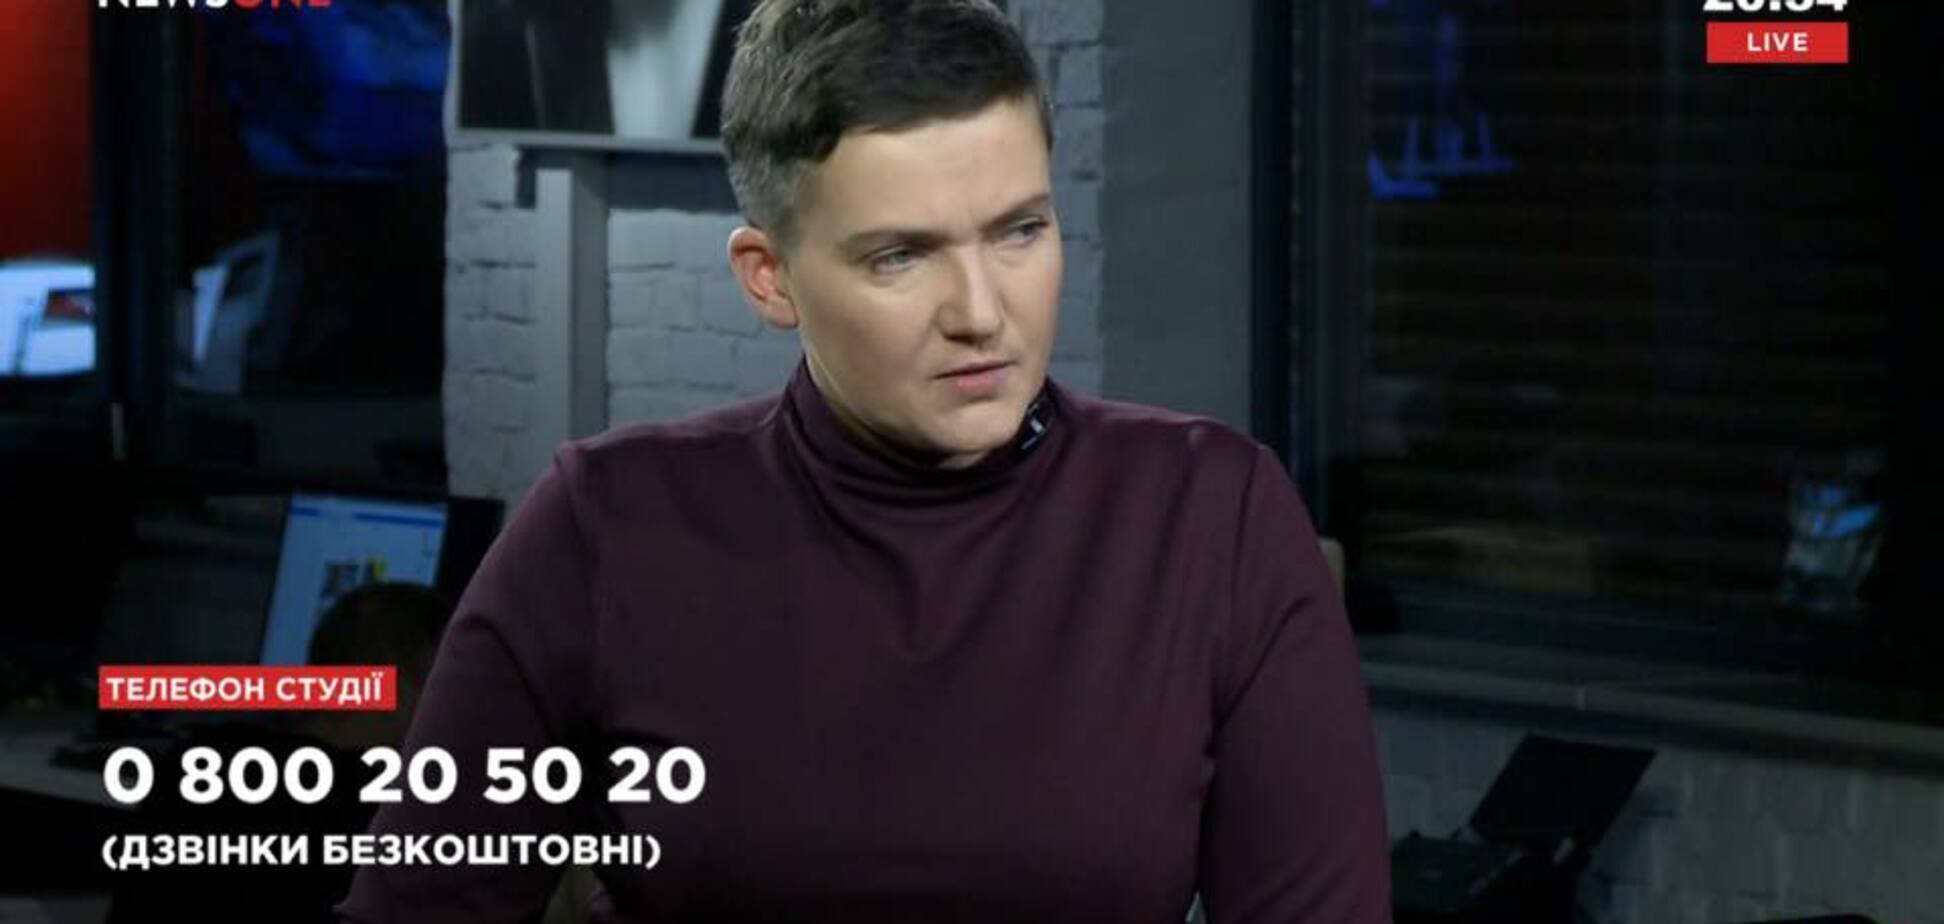 'Медведчук використовує Надю по повній': скандальна заява Савченко обурила мережу